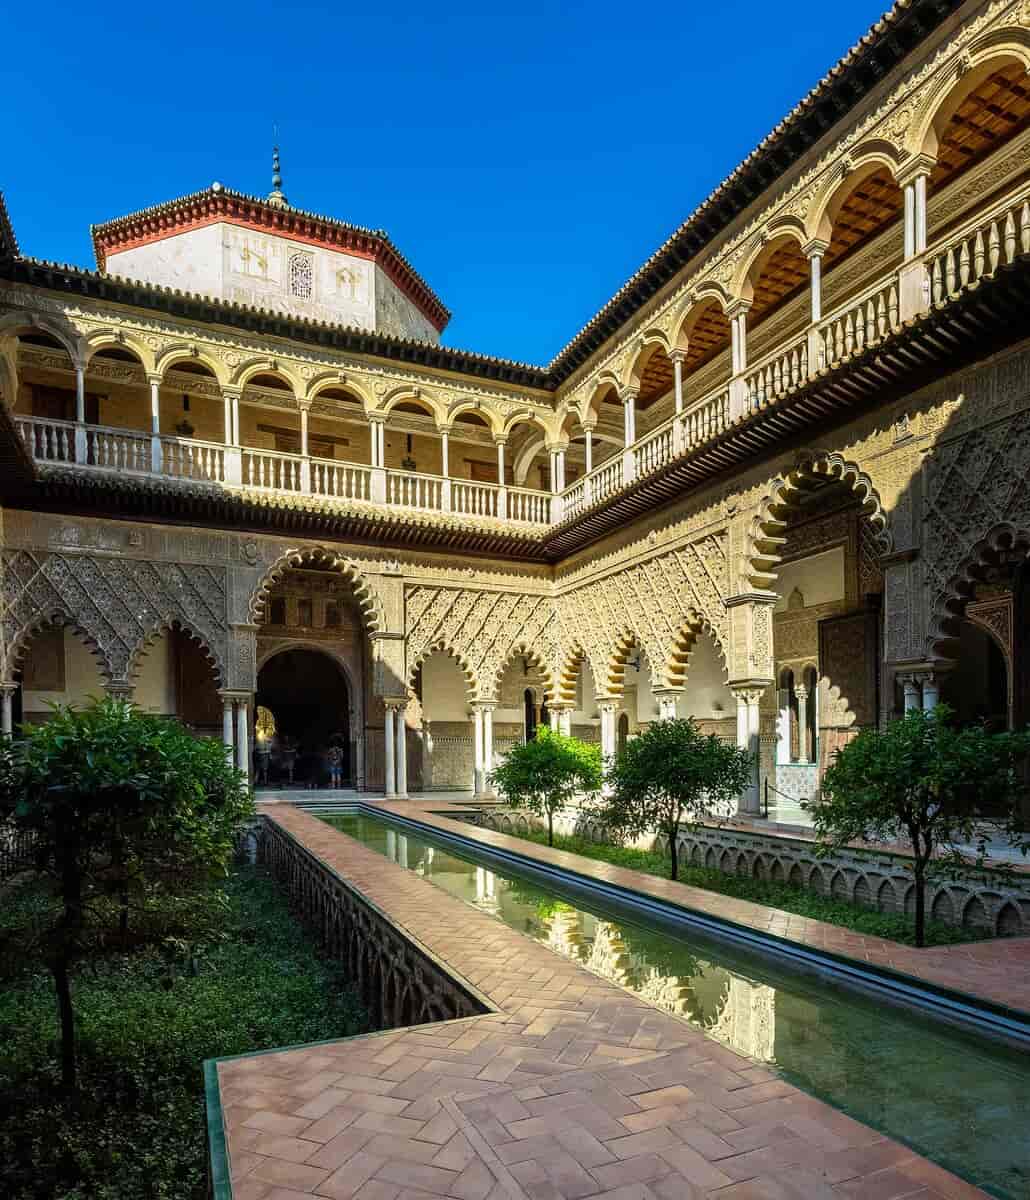 Atriet i Alcázar de Sevilla